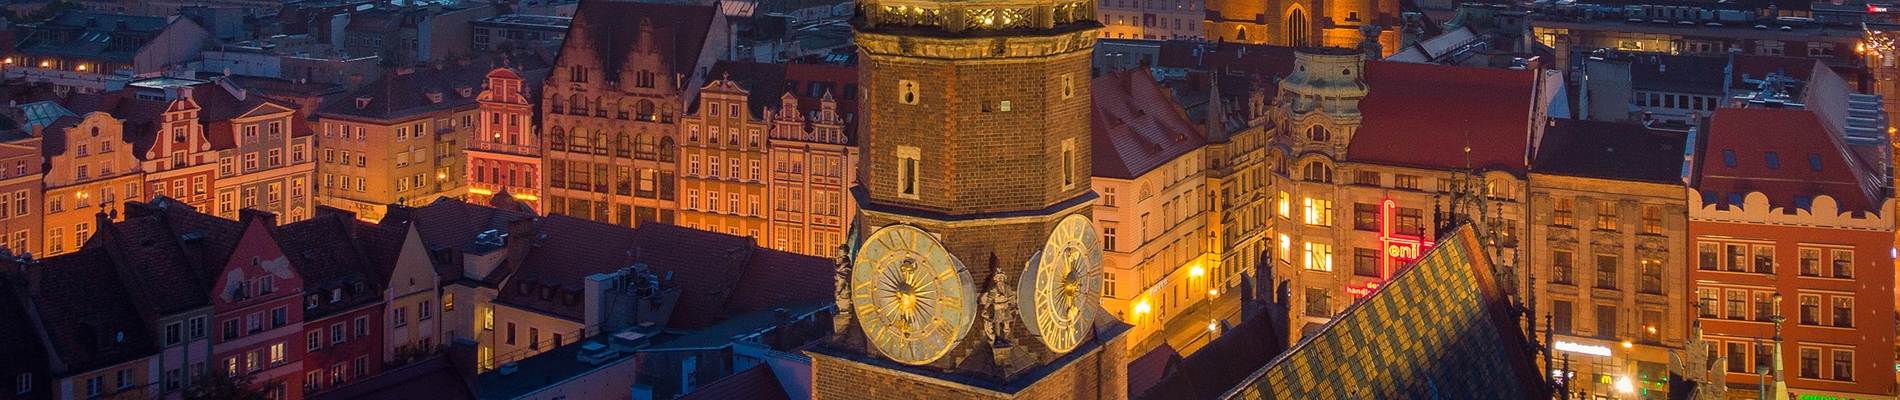 Wrocław na Weekend - Najpopularniejsze Atrakcje Wrocławia  